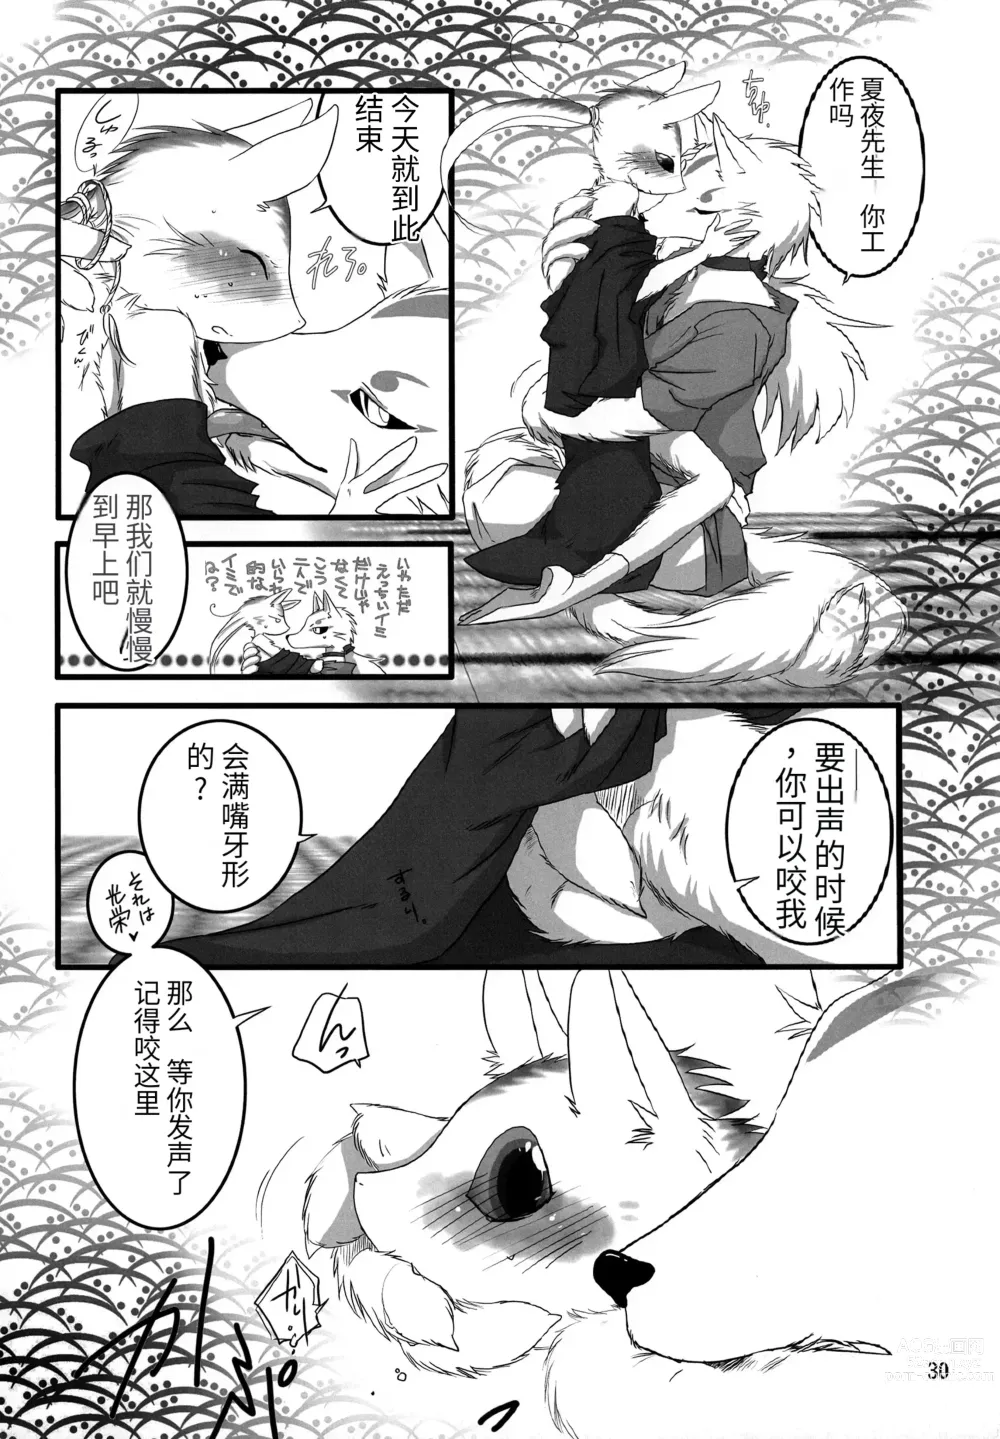 Page 29 of doujinshi Kemono no Roukaku - Utage